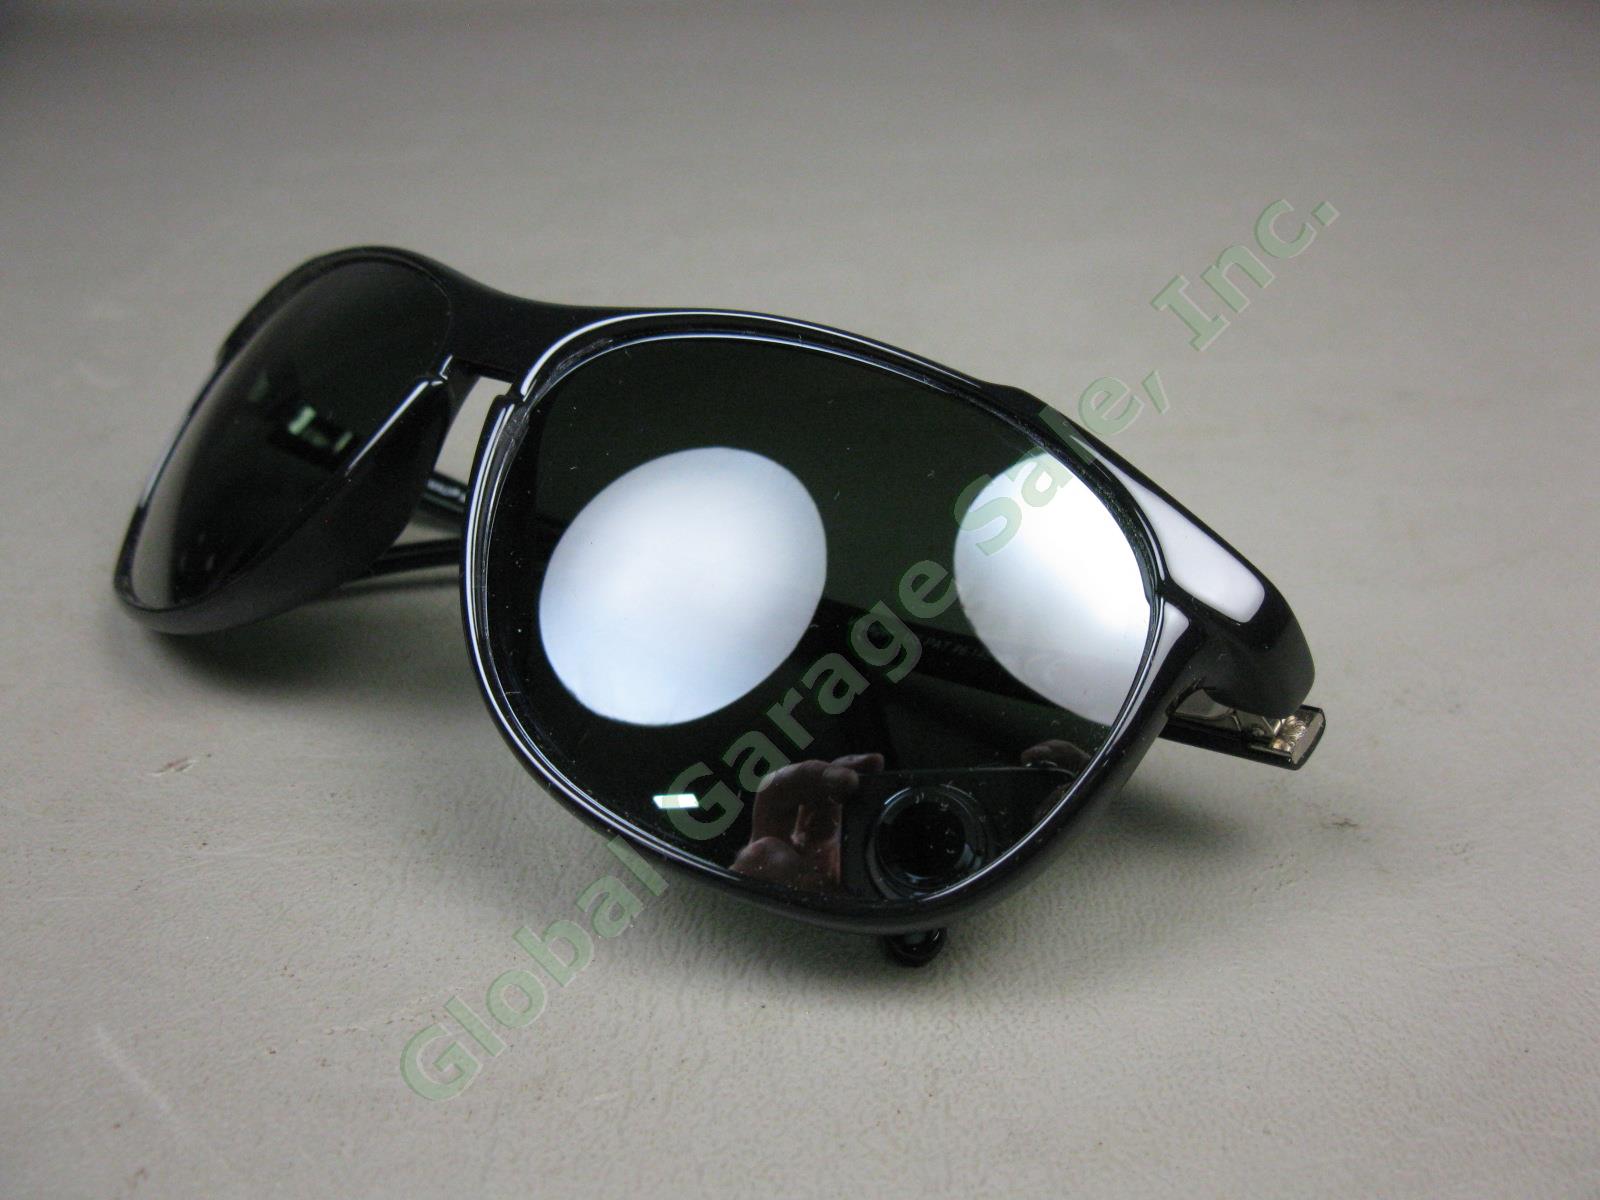 Maui Jim Voyager MJ178-02II 60/15-135 Polarized Lens Black Frame Sunglasses Lot 4